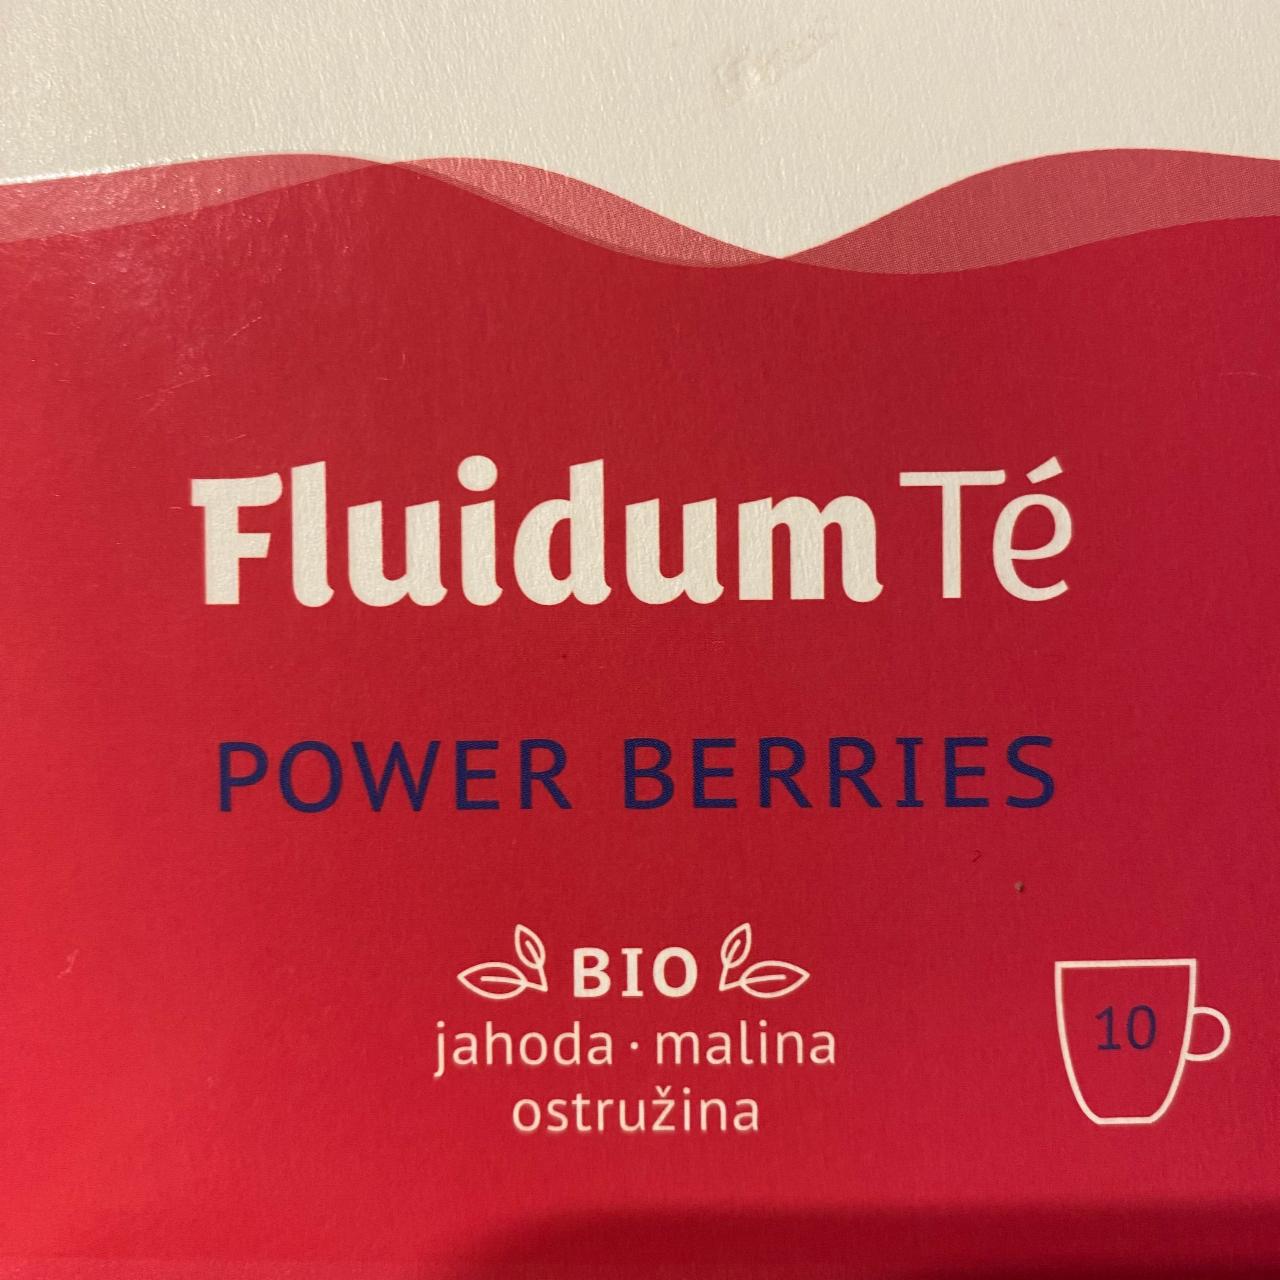 Fotografie - Bio Fluidum Té Power Berries jahoda malina ostružina